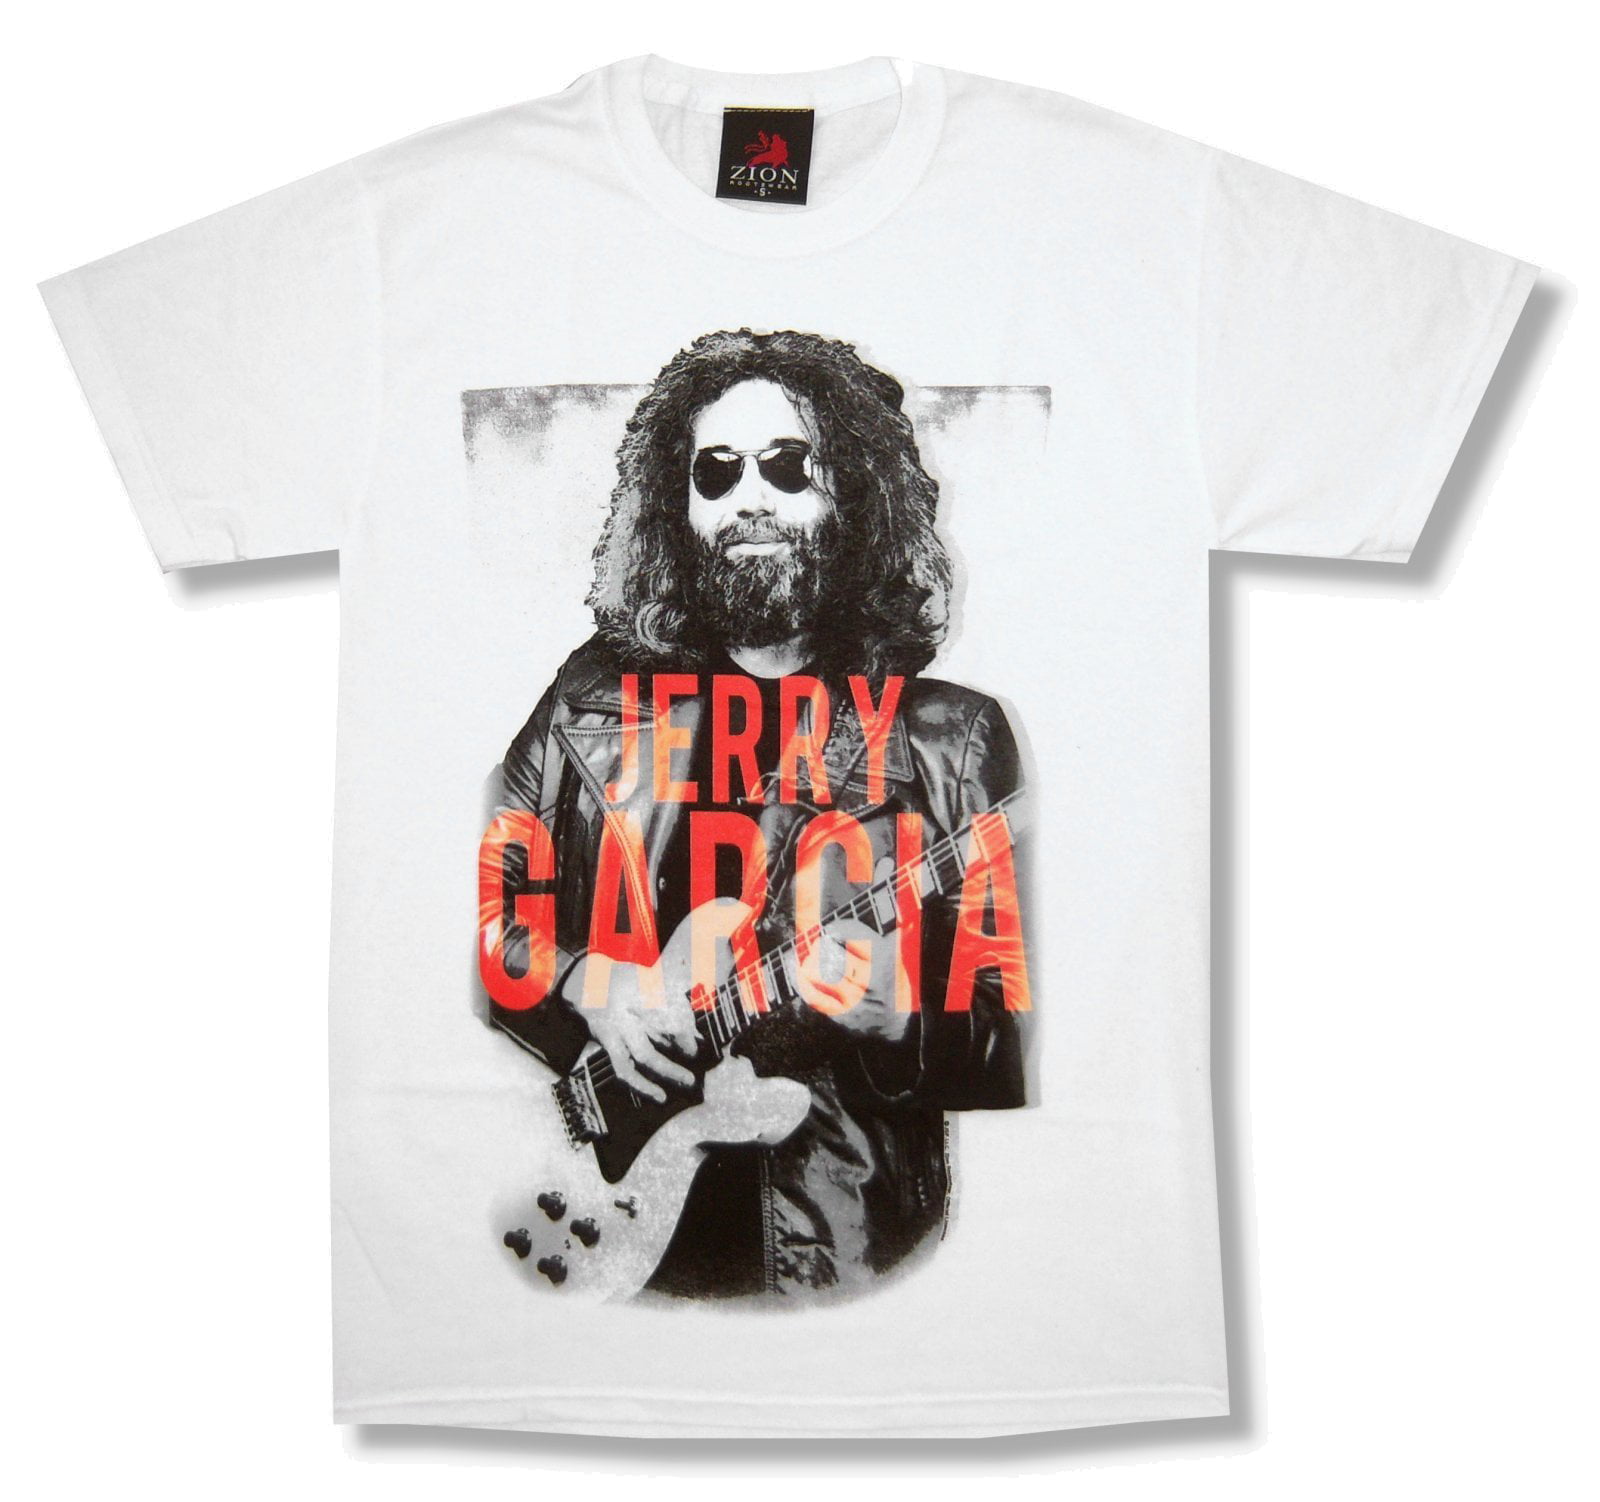 Jerry Garcia portrait t-shirts